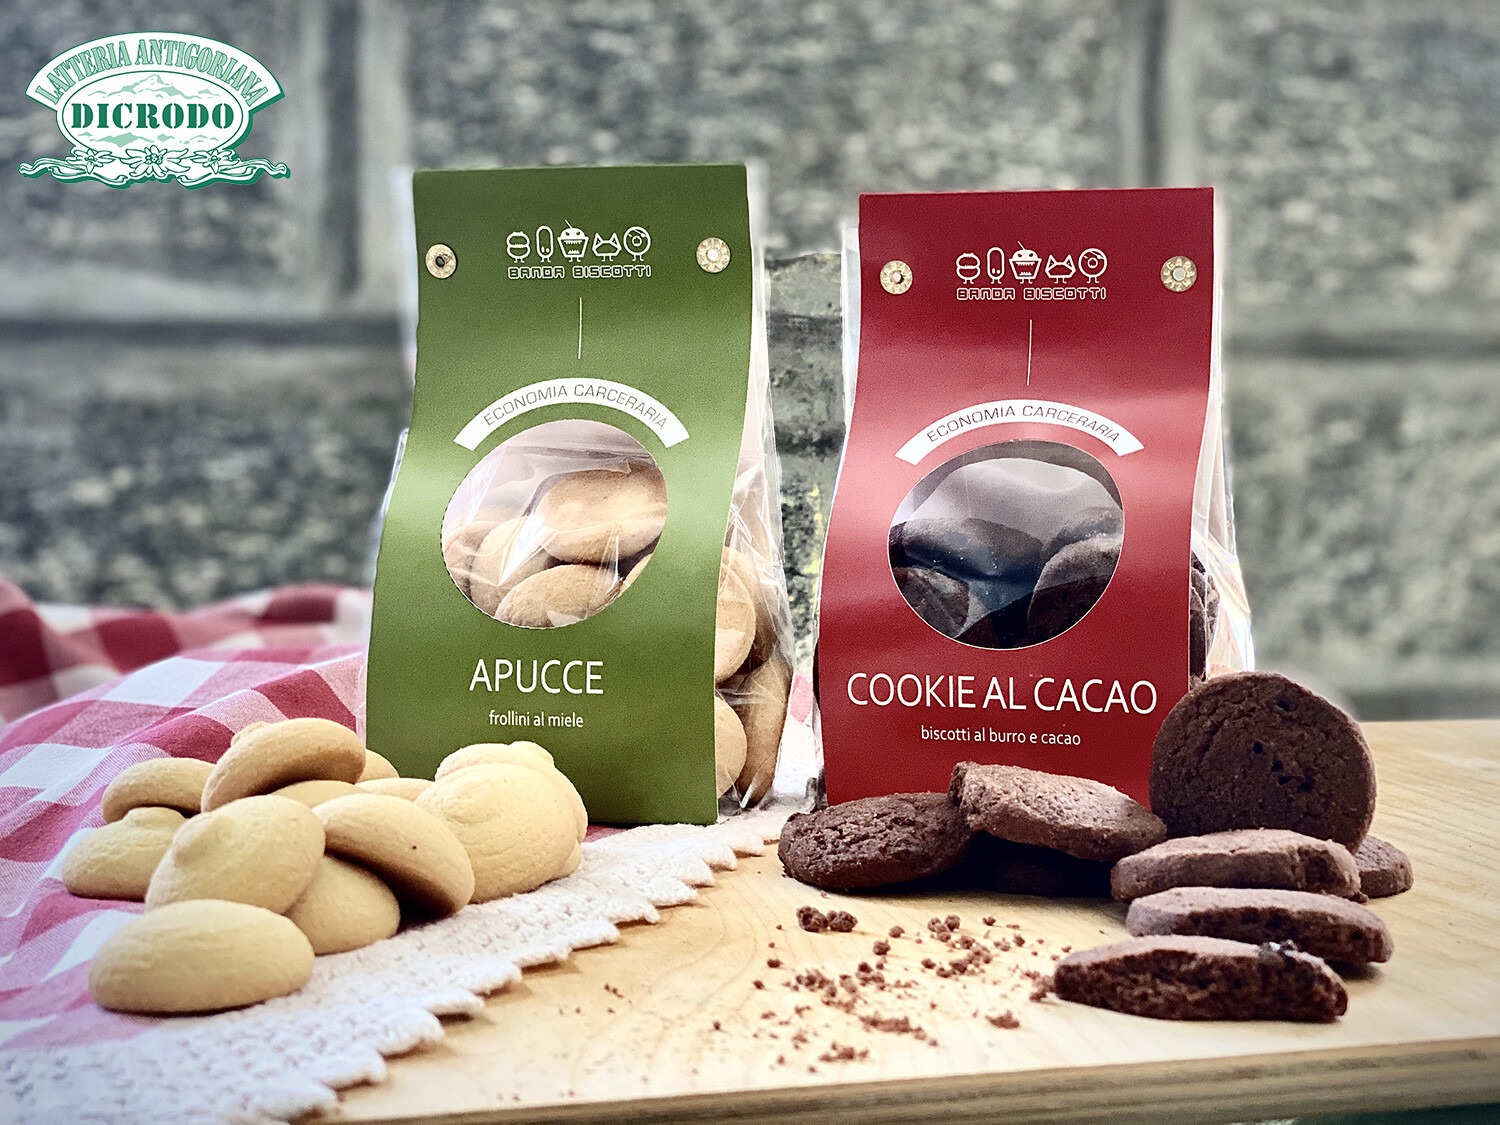 Biscotti 'Banda Biscotti' Cookie al cacao + Apucce